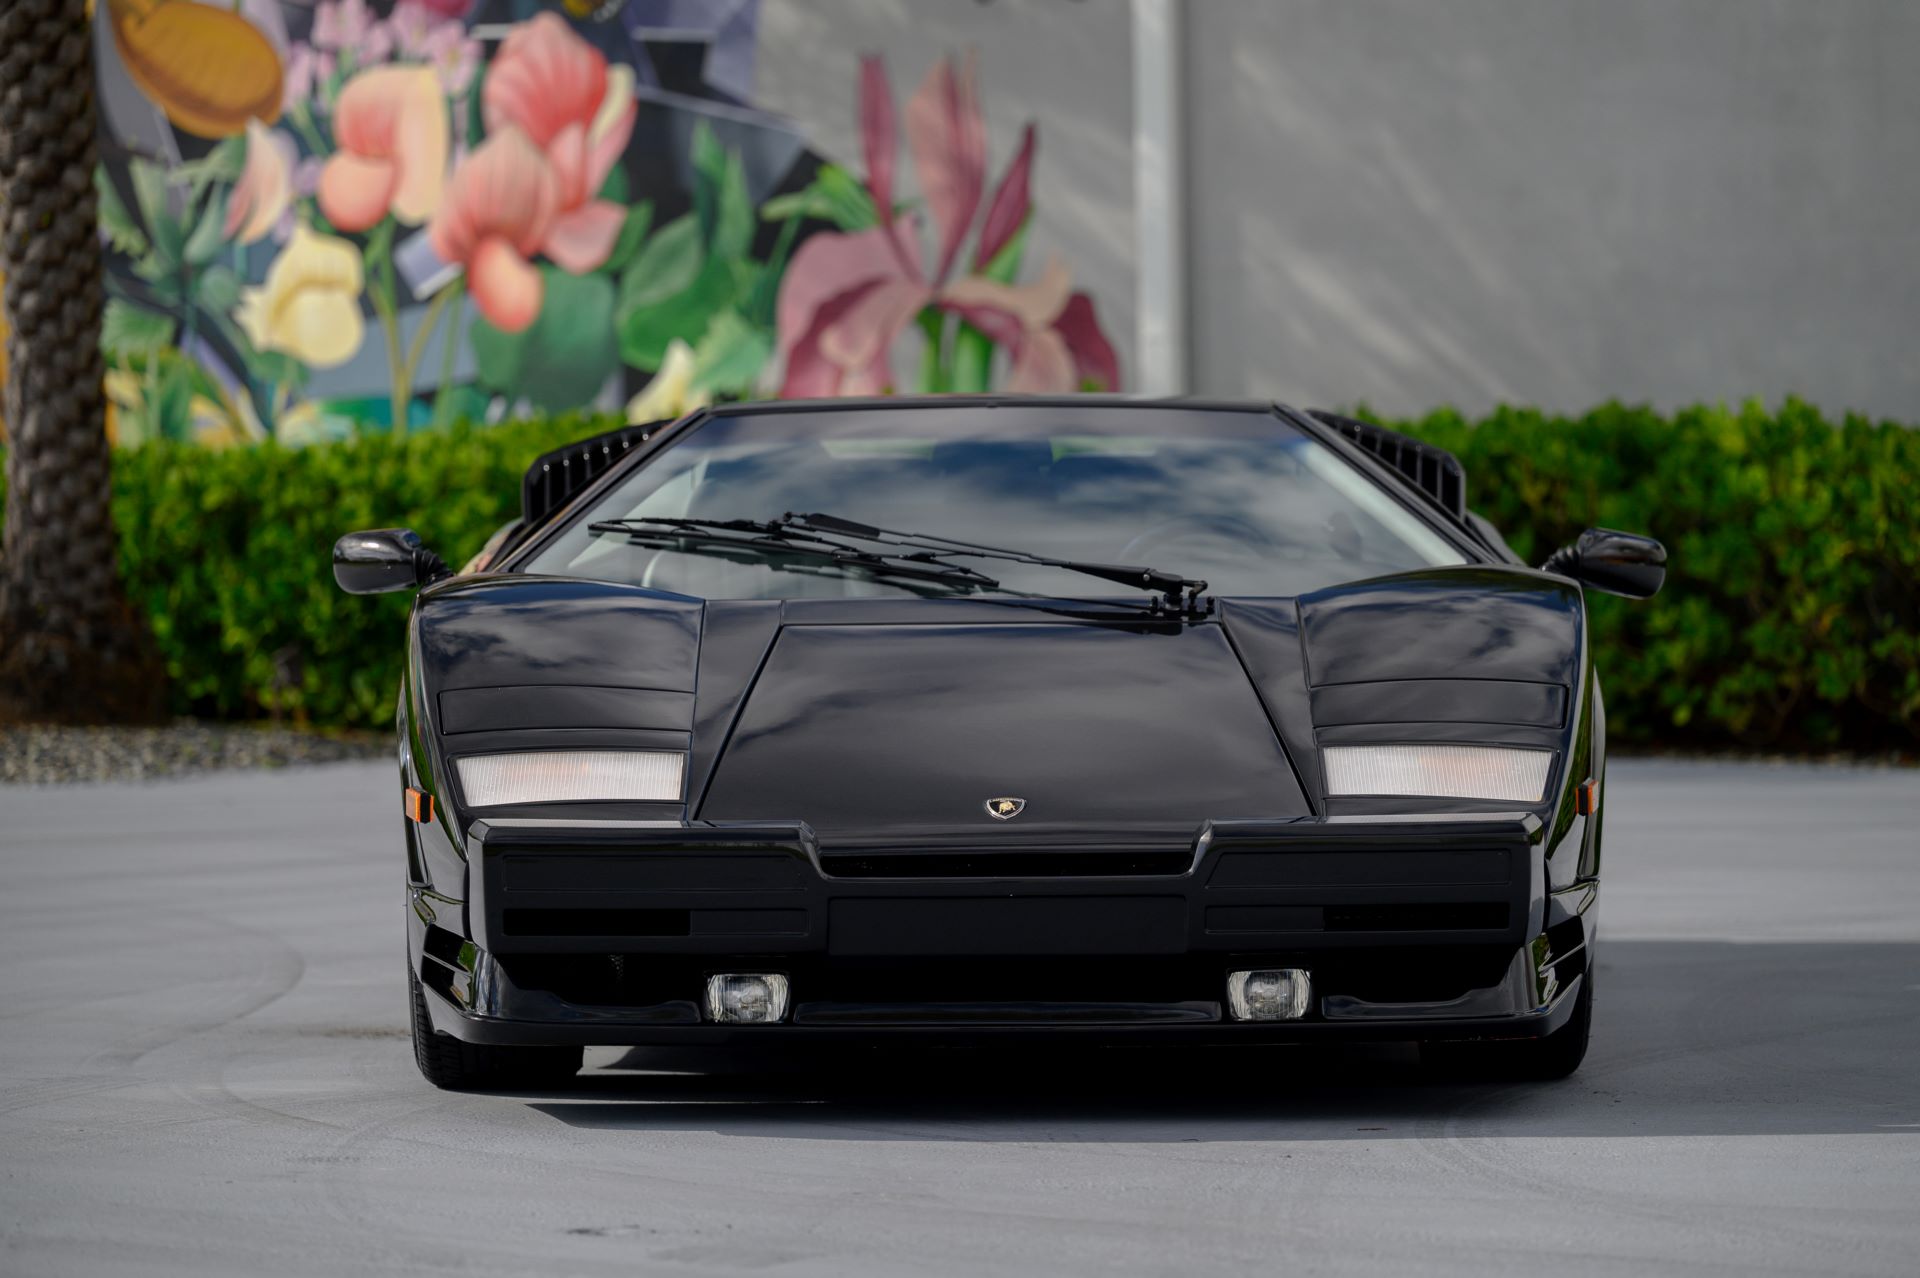 Lamborghini-Countach-25th-Anniversary-Edition-auction-7